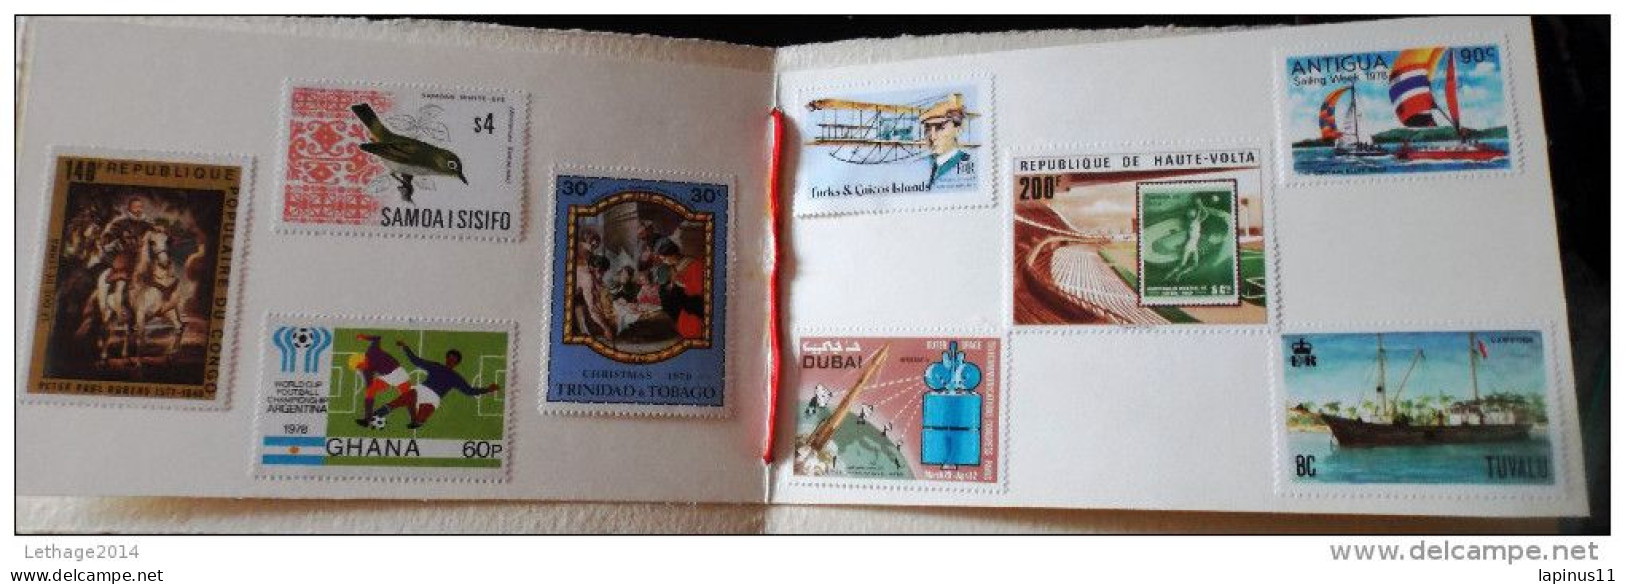 Stamps LOT Procede D'imprimer England Security Printer - Sammlungen